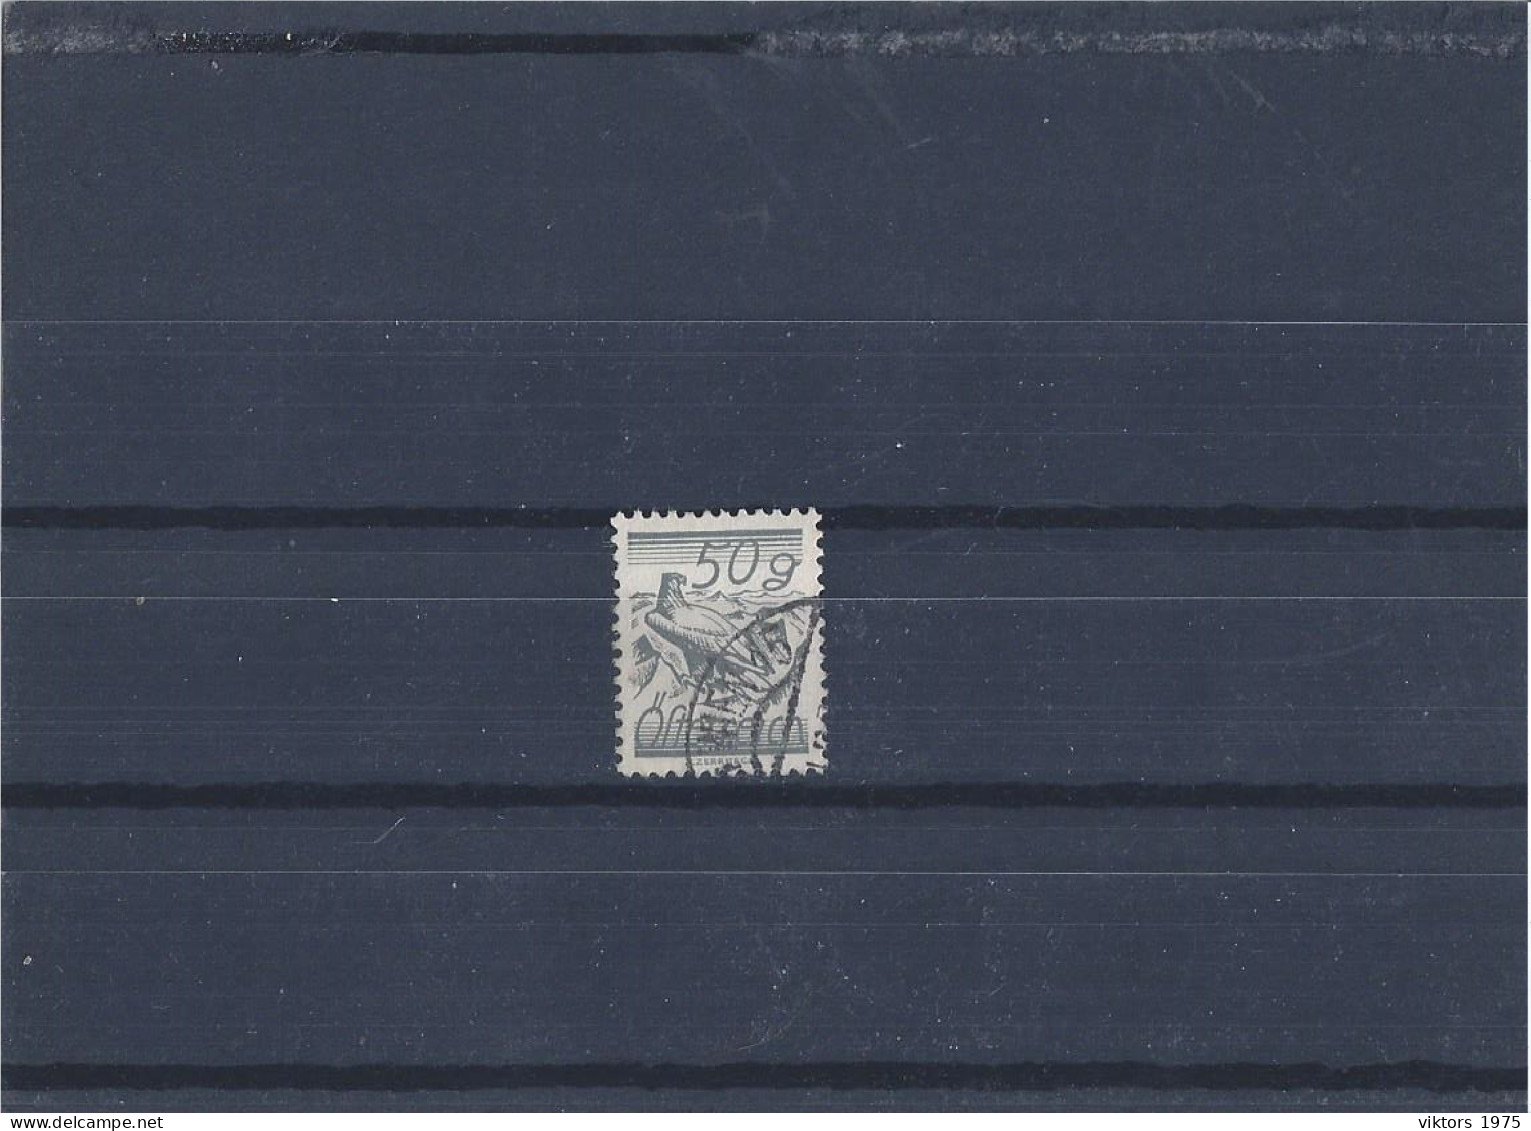 Used Stamp Nr.463 In MICHEL Catalog - Gebruikt